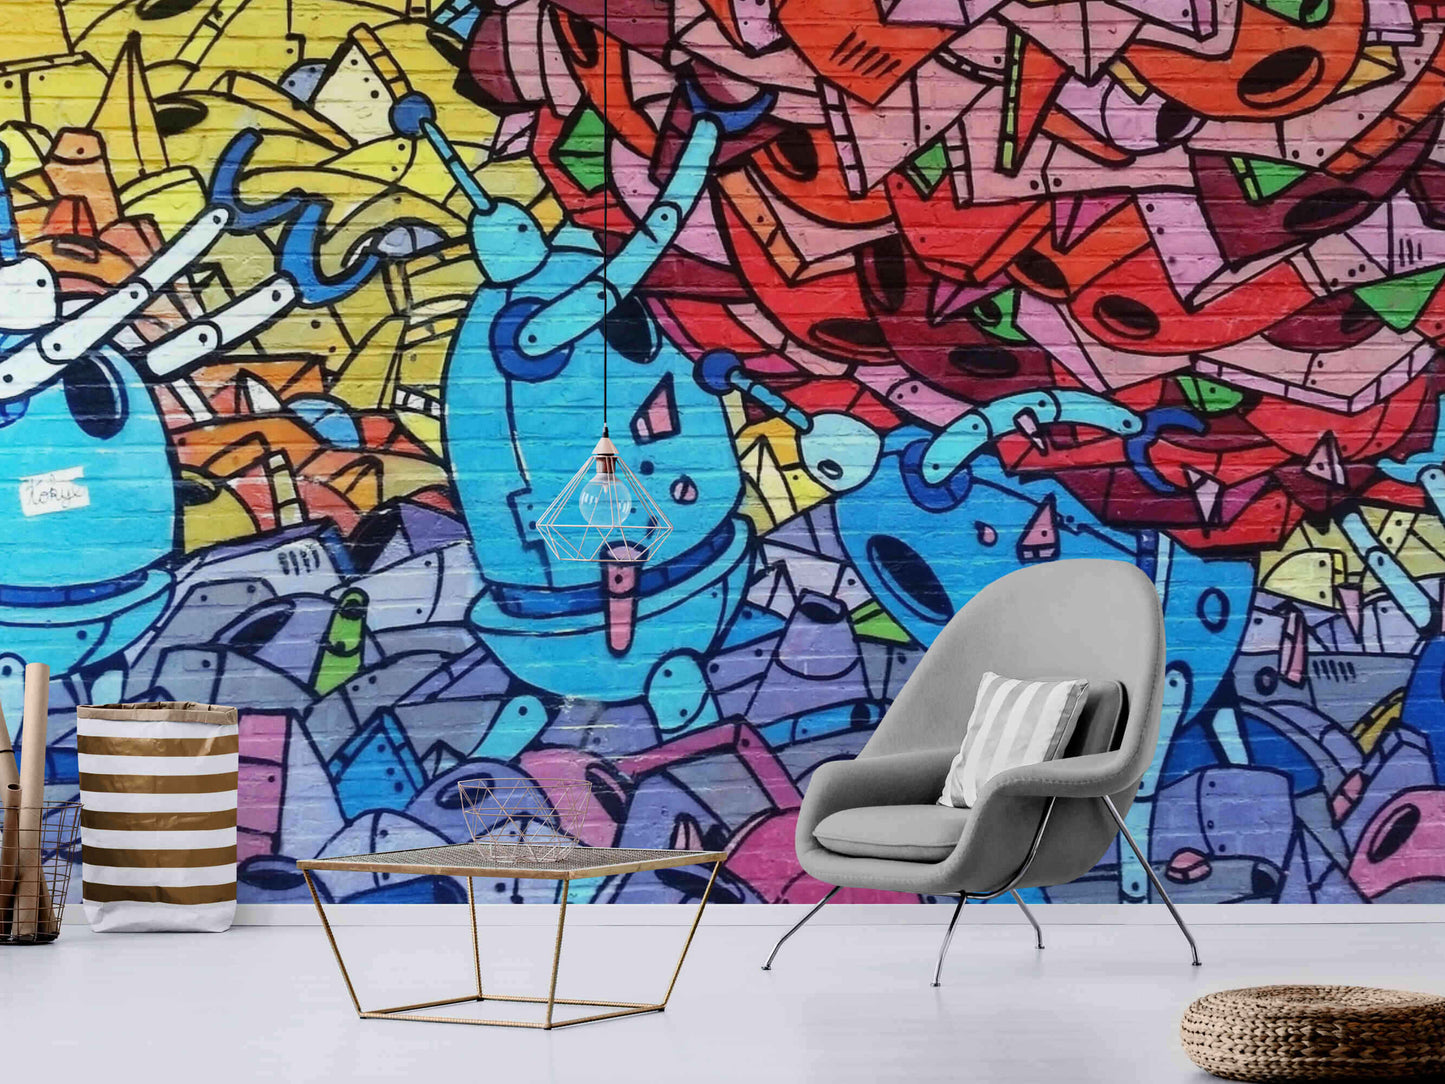 Vibrant graffiti wall art transforming a bedroom into a creative sanctuary.